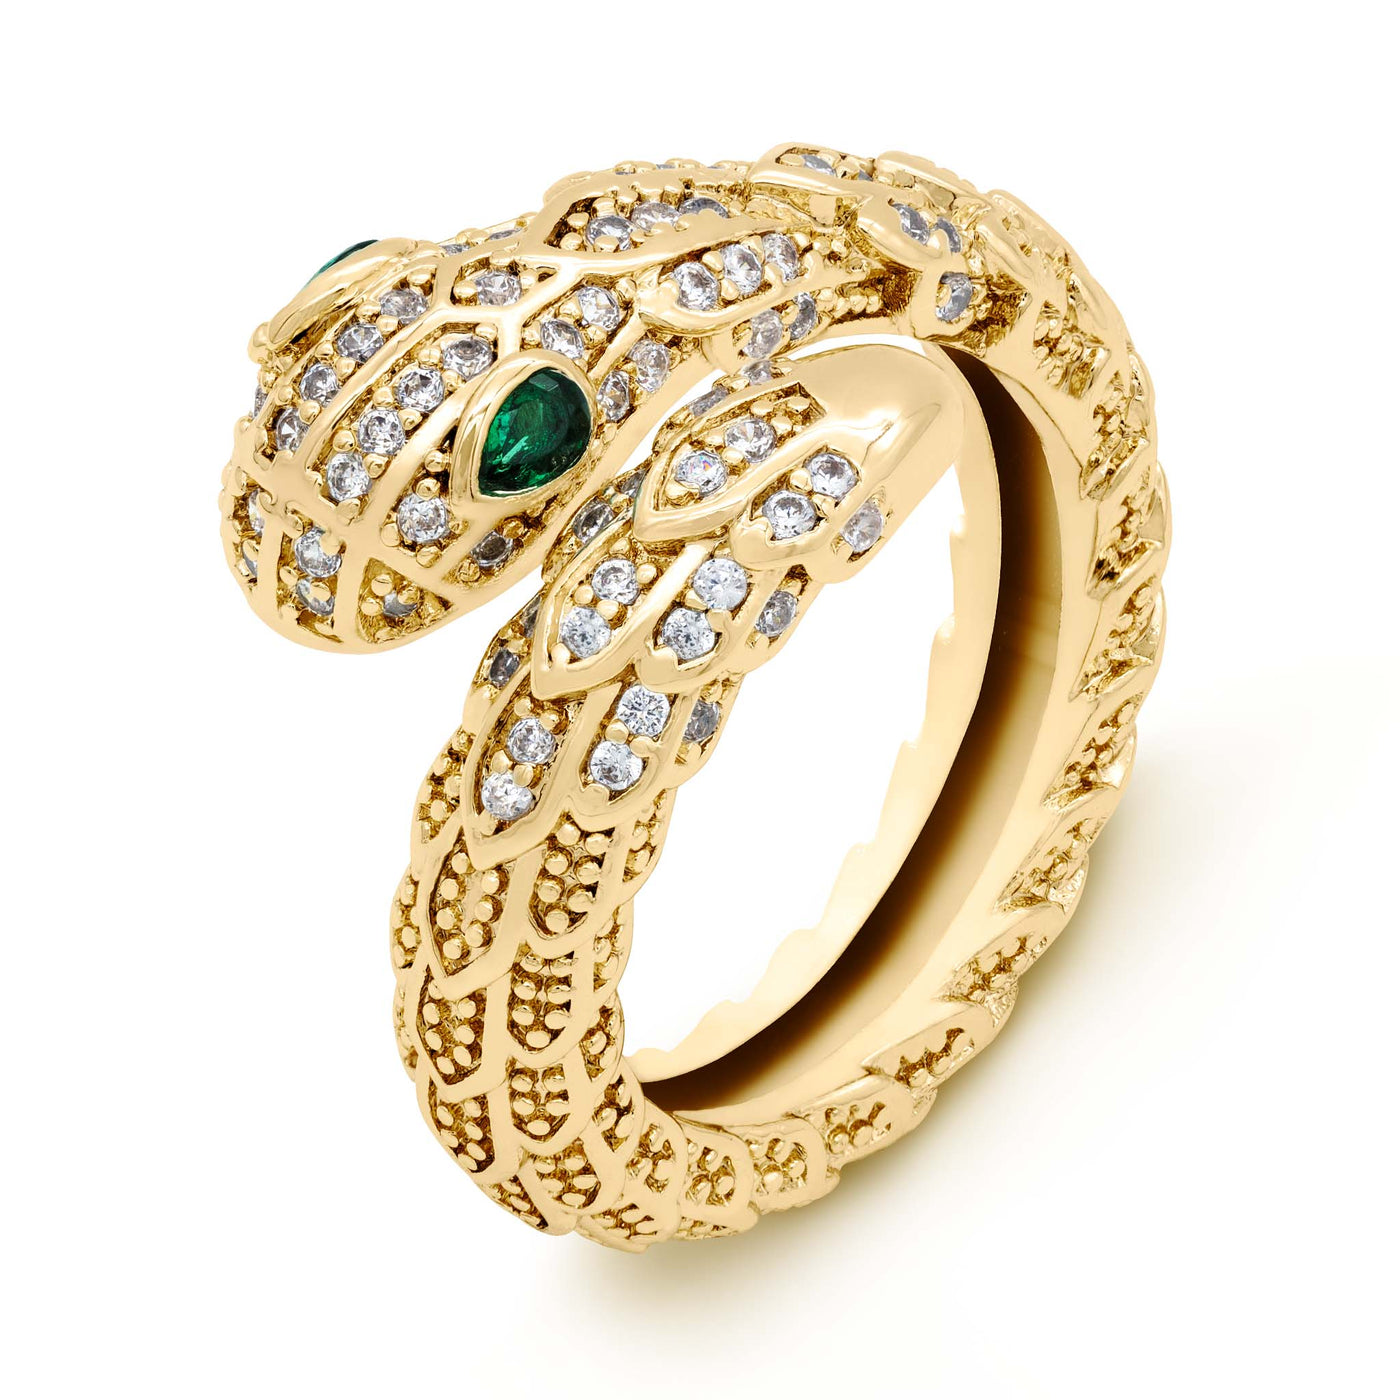 Naga - The Serpent Ring Gold / Adjustable (Size US 5 - US 11) Higherchakra Rings Serpent Ring - Snake Ring of Protection - Naga